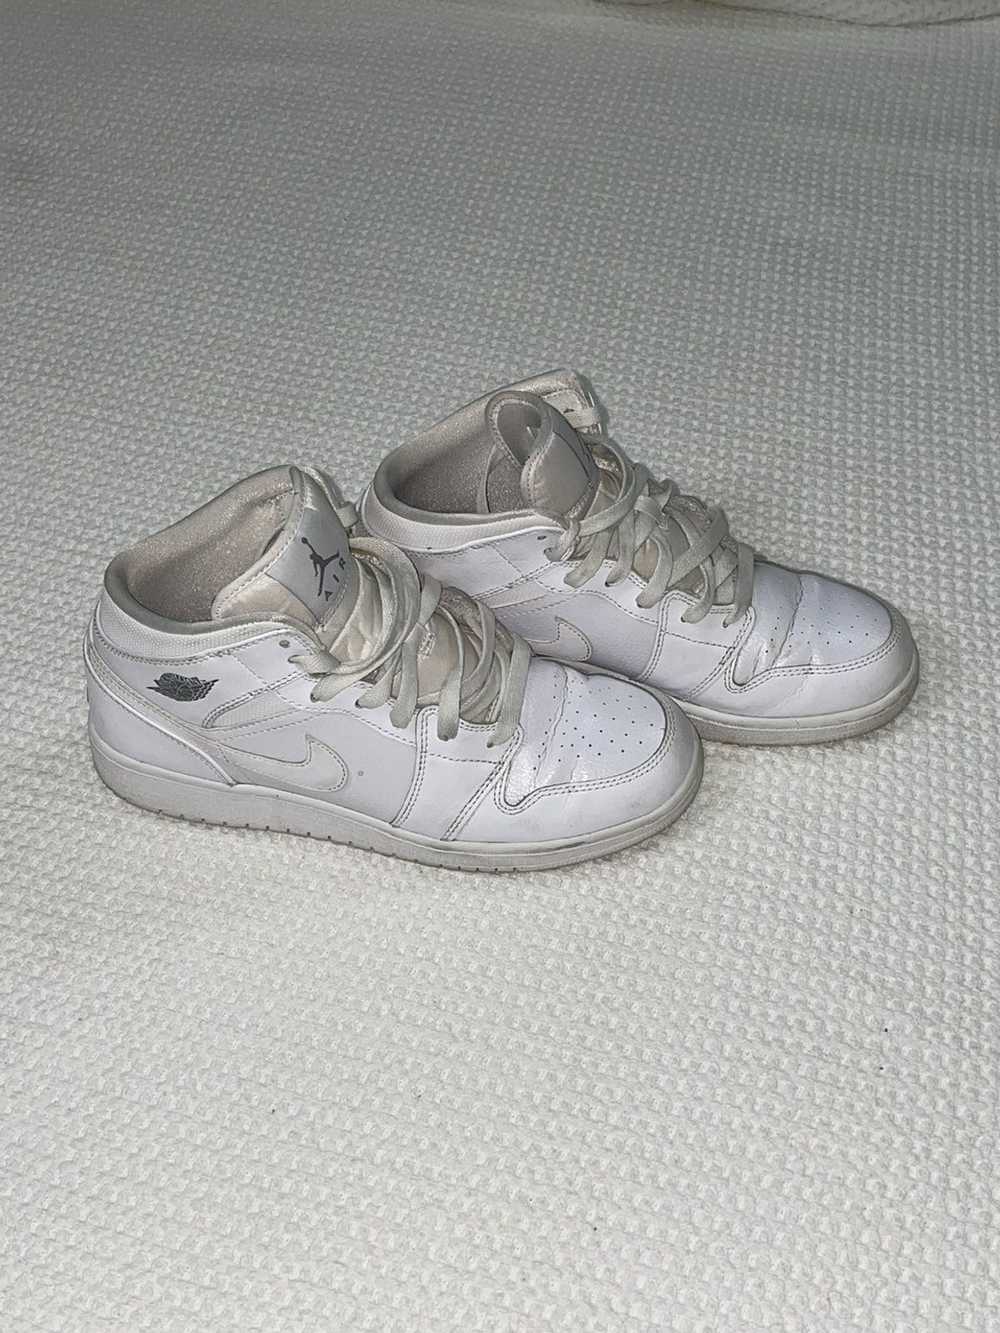 Jordan Brand × Nike Jordan 1 Mid-top white on whi… - image 5